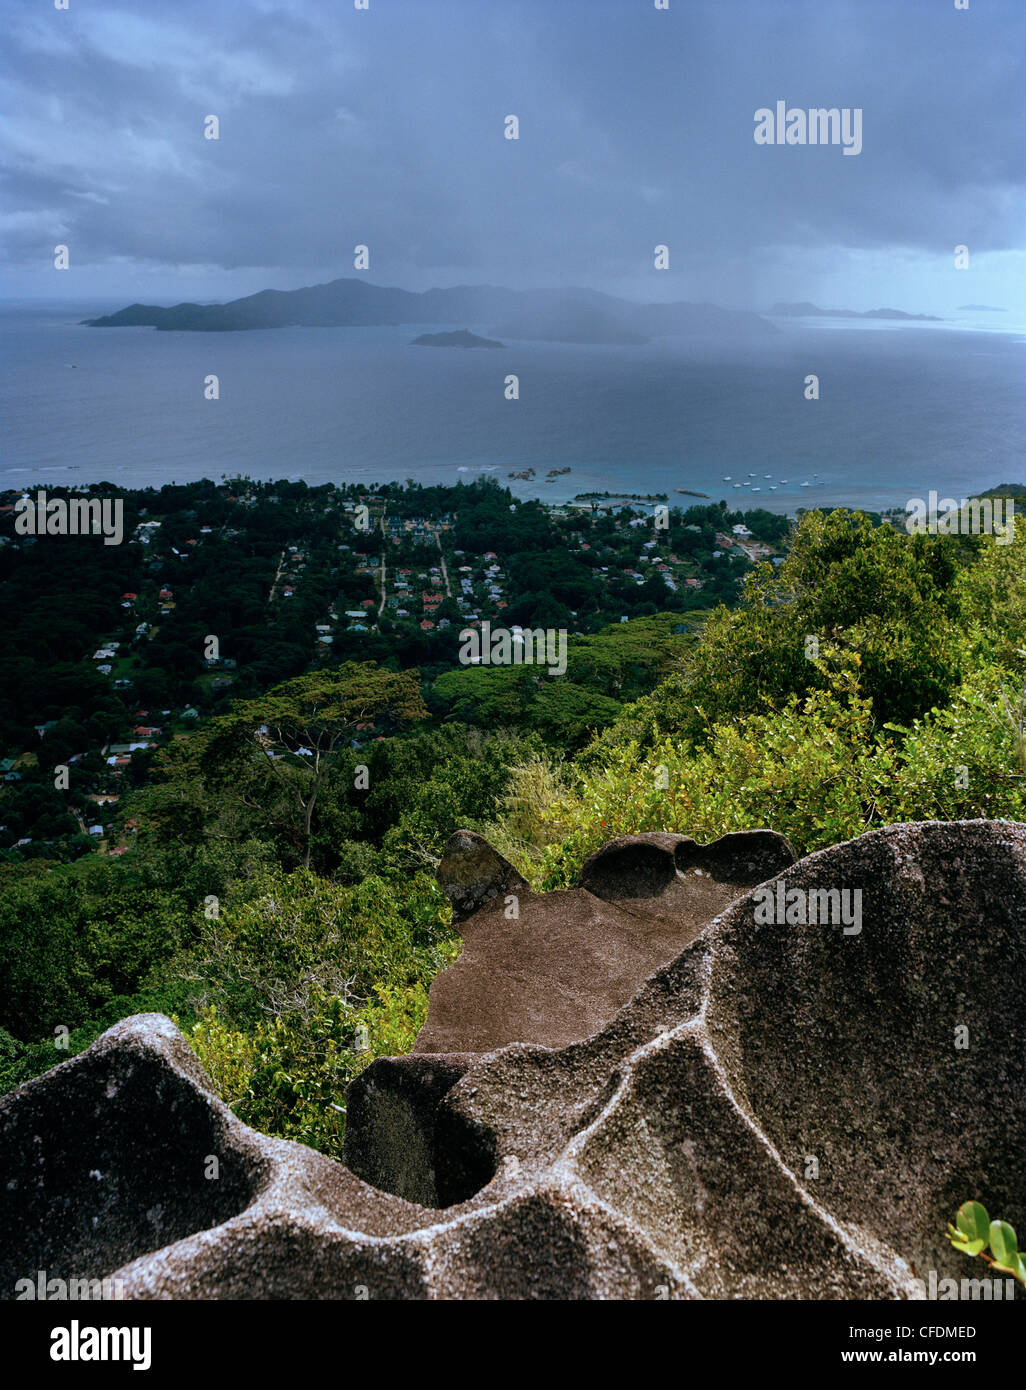 Roca granítica en el camino a Nid d'Aigles mirador de 300m sobre el nivel del mar, vista sobre el pueblo de La Passe y la isla Praslin Foto de stock